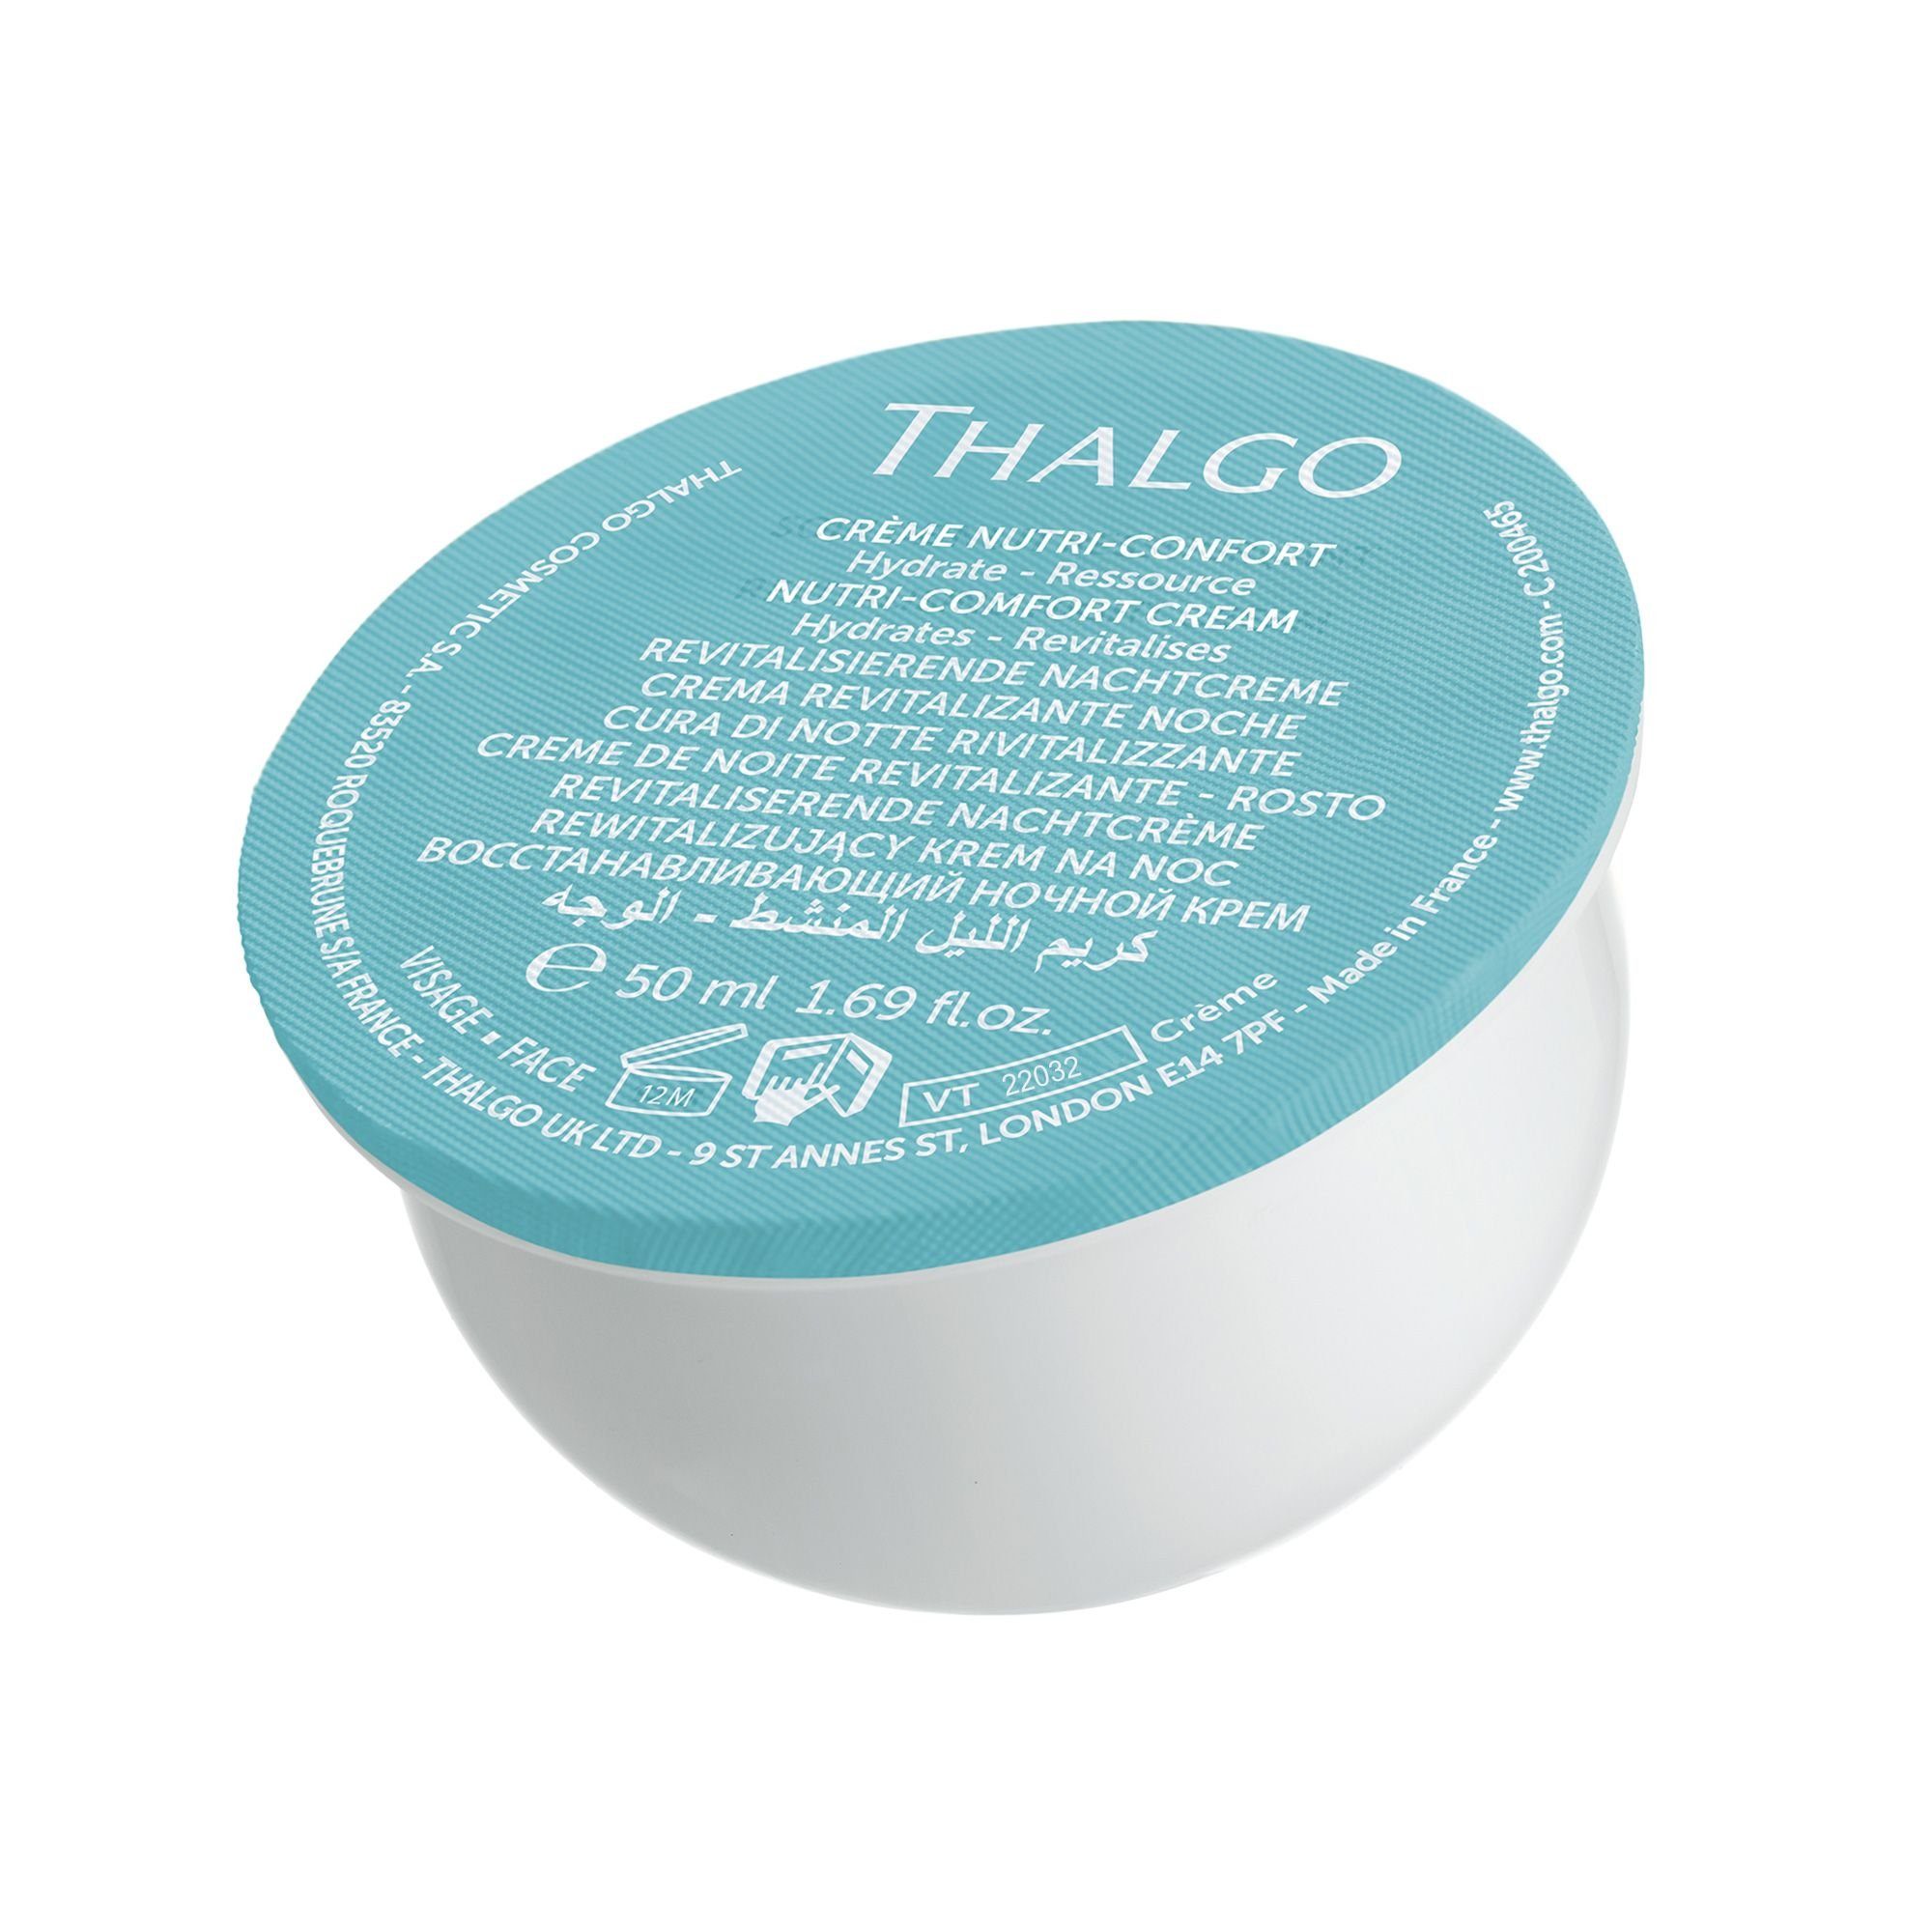 Nutri-Comfort-Creme, 50ml Schutz trockene Anti-Aging-Creme THALGO Refill für Sanfte Haut,